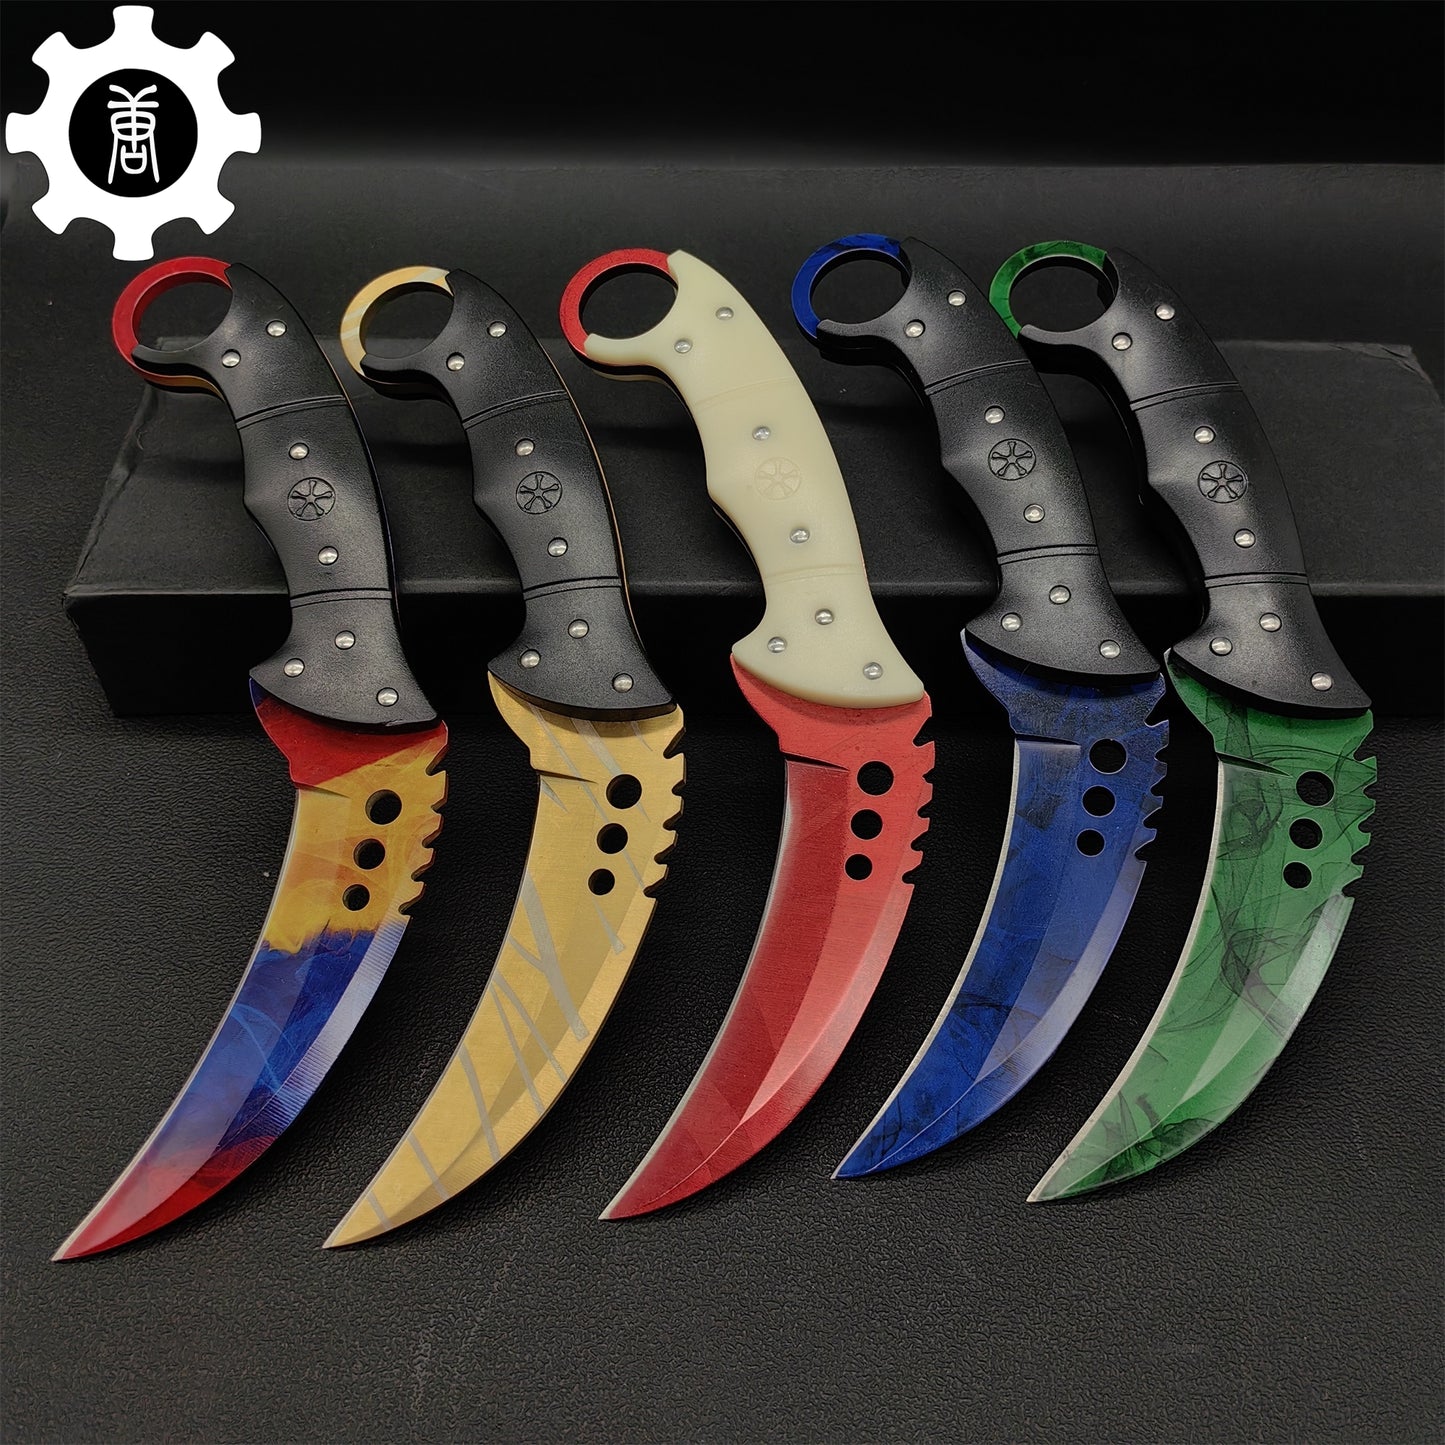 CSGO Talon Knife Sharp Blade Knife 5 In 1 Pack